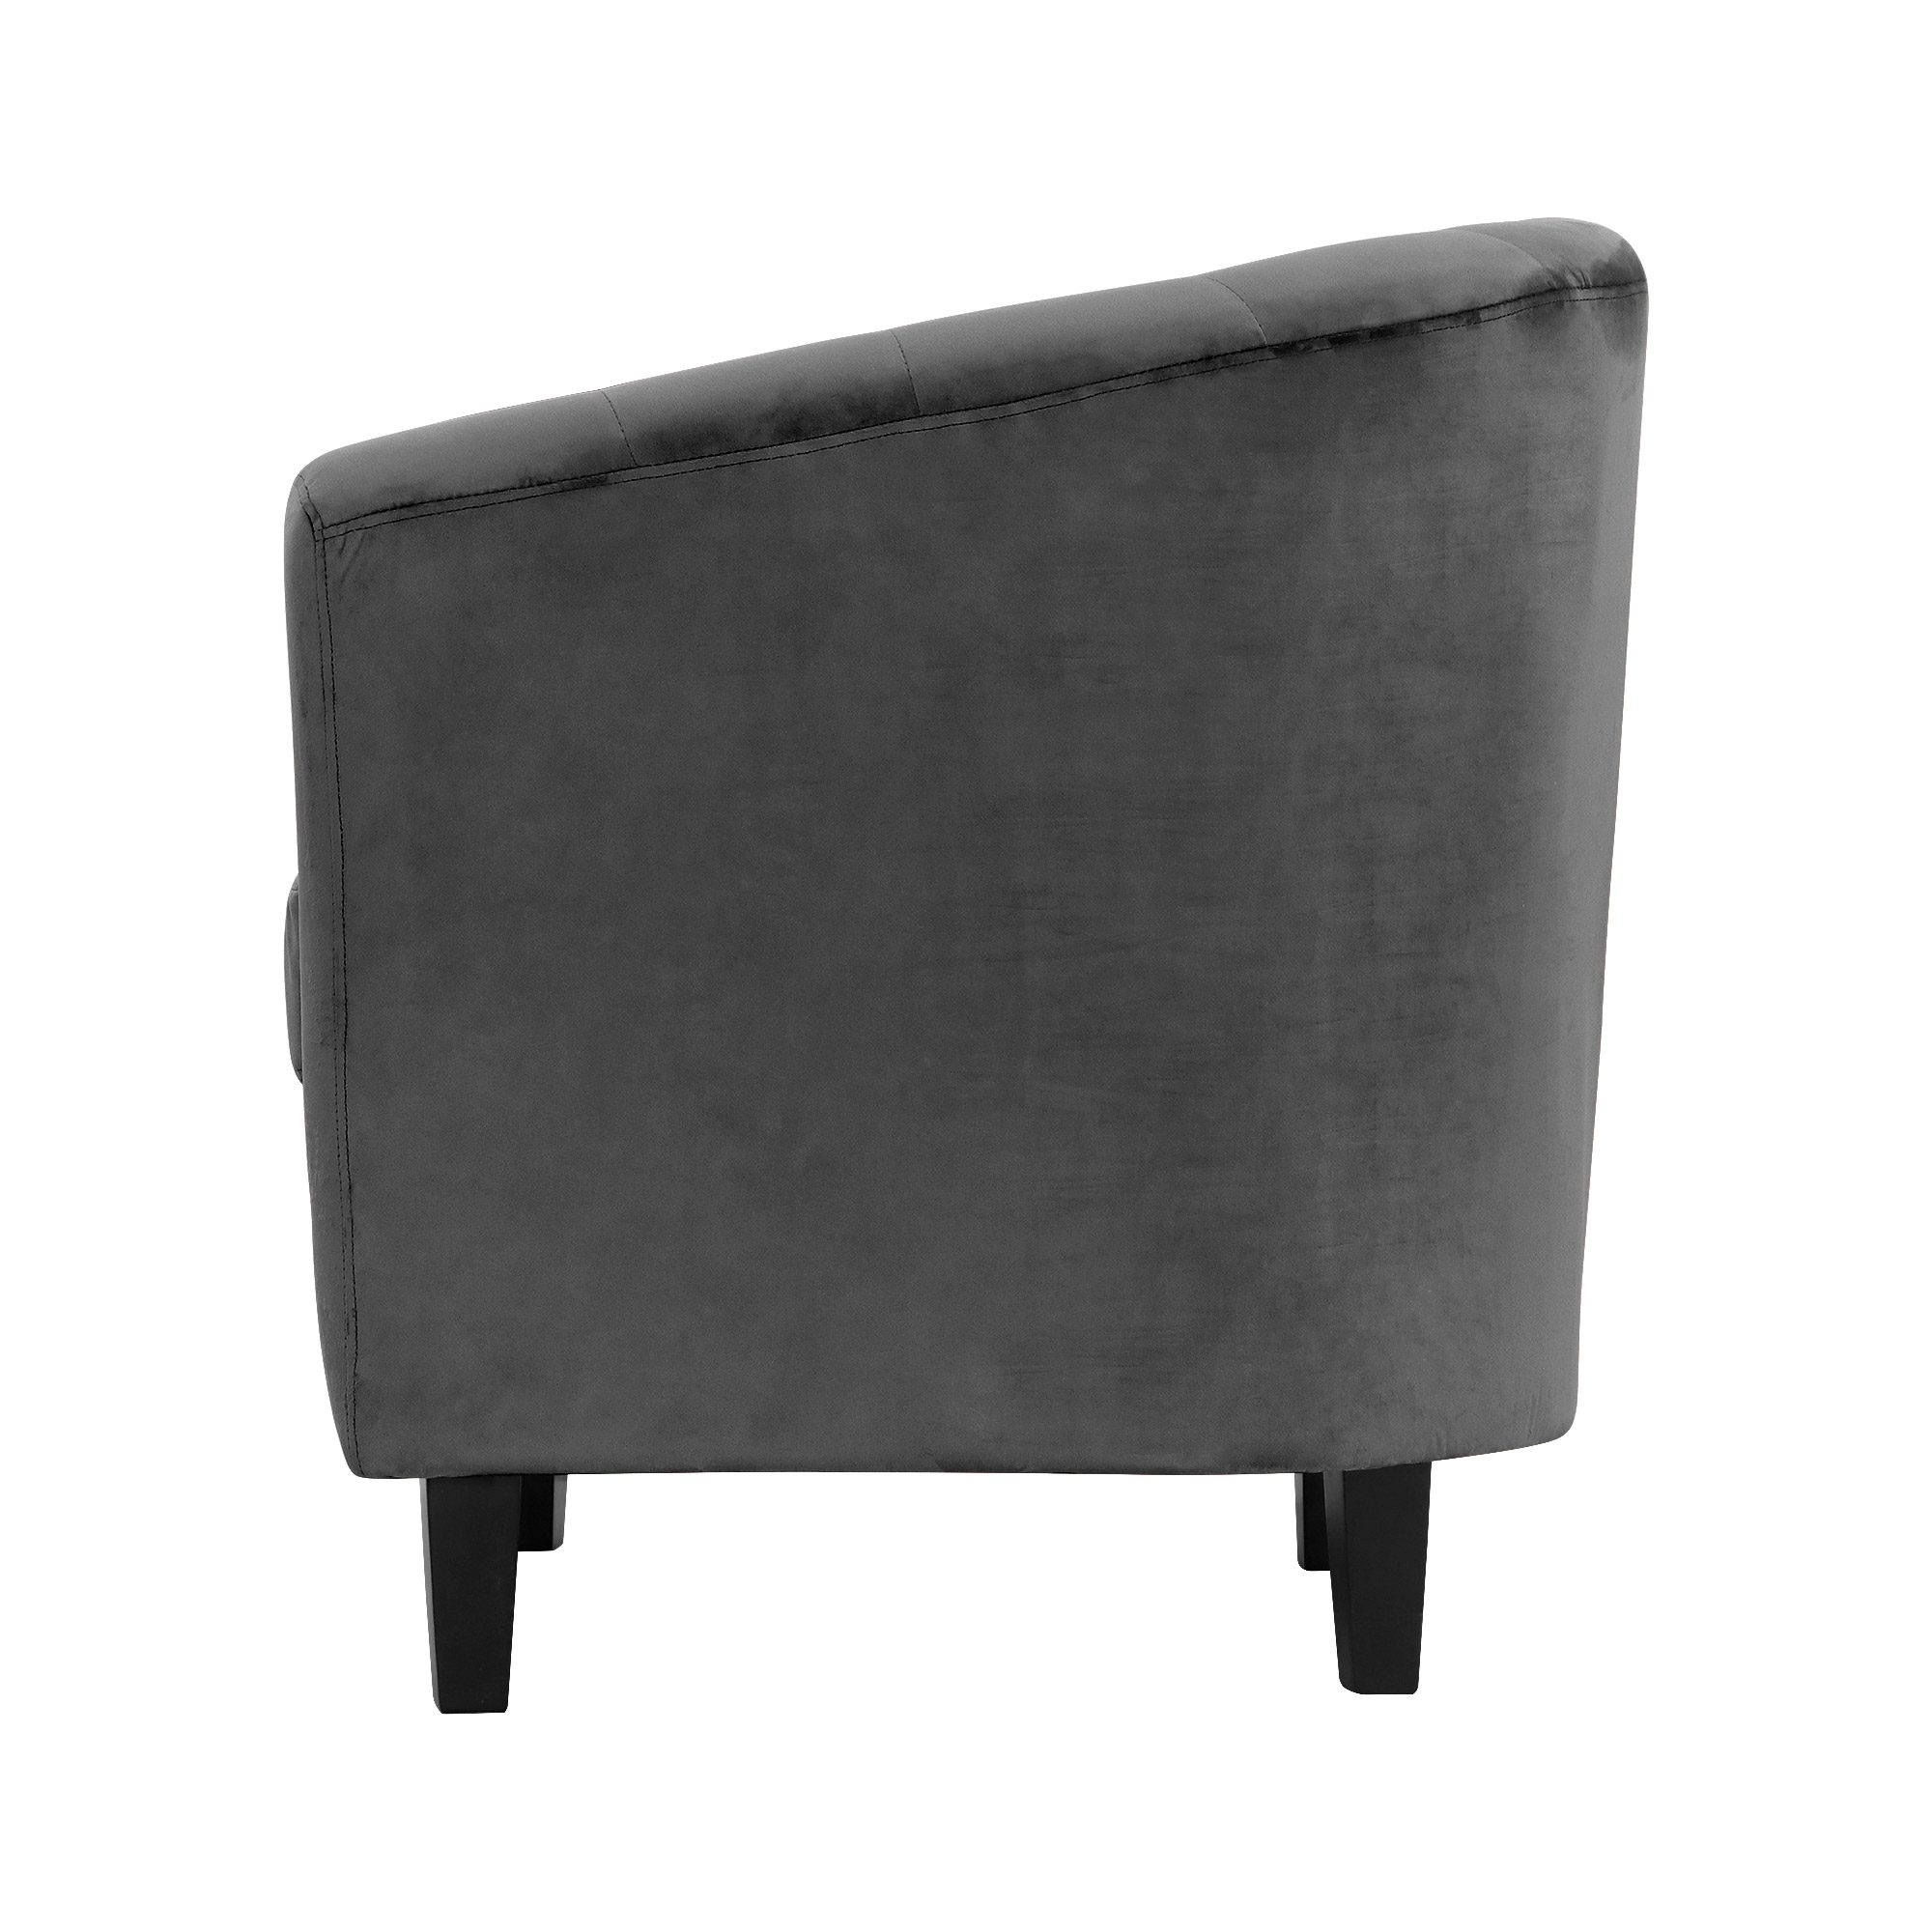 Кресло Shanshi Оливия серое 72x63x71cm, цвет серый - фото 3